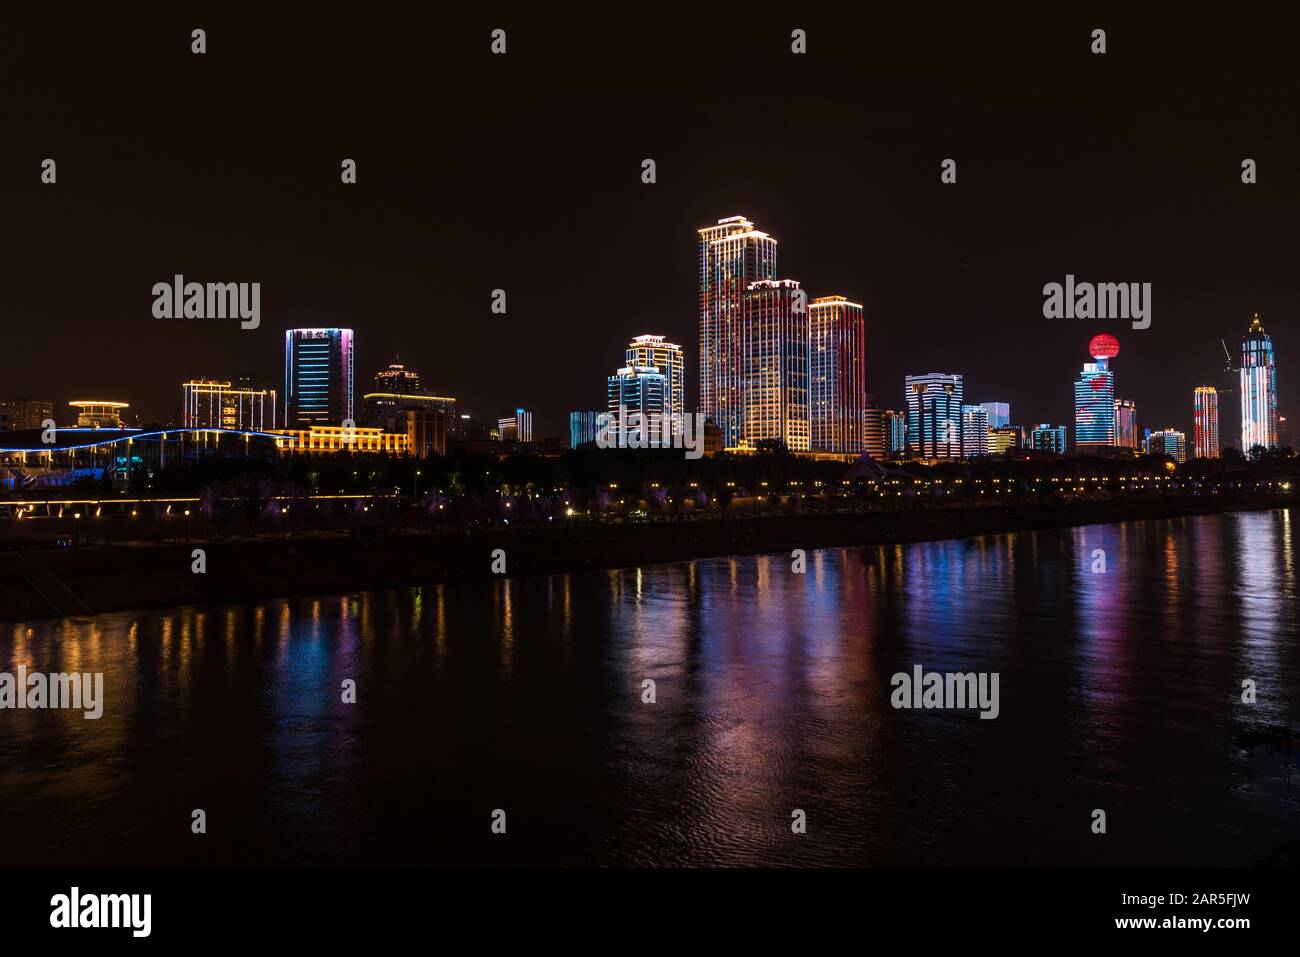 Wuhan bord de mer la nuit avec des blocs de tour illuminés formant un spectacle de lumière en constante évolution Banque D'Images